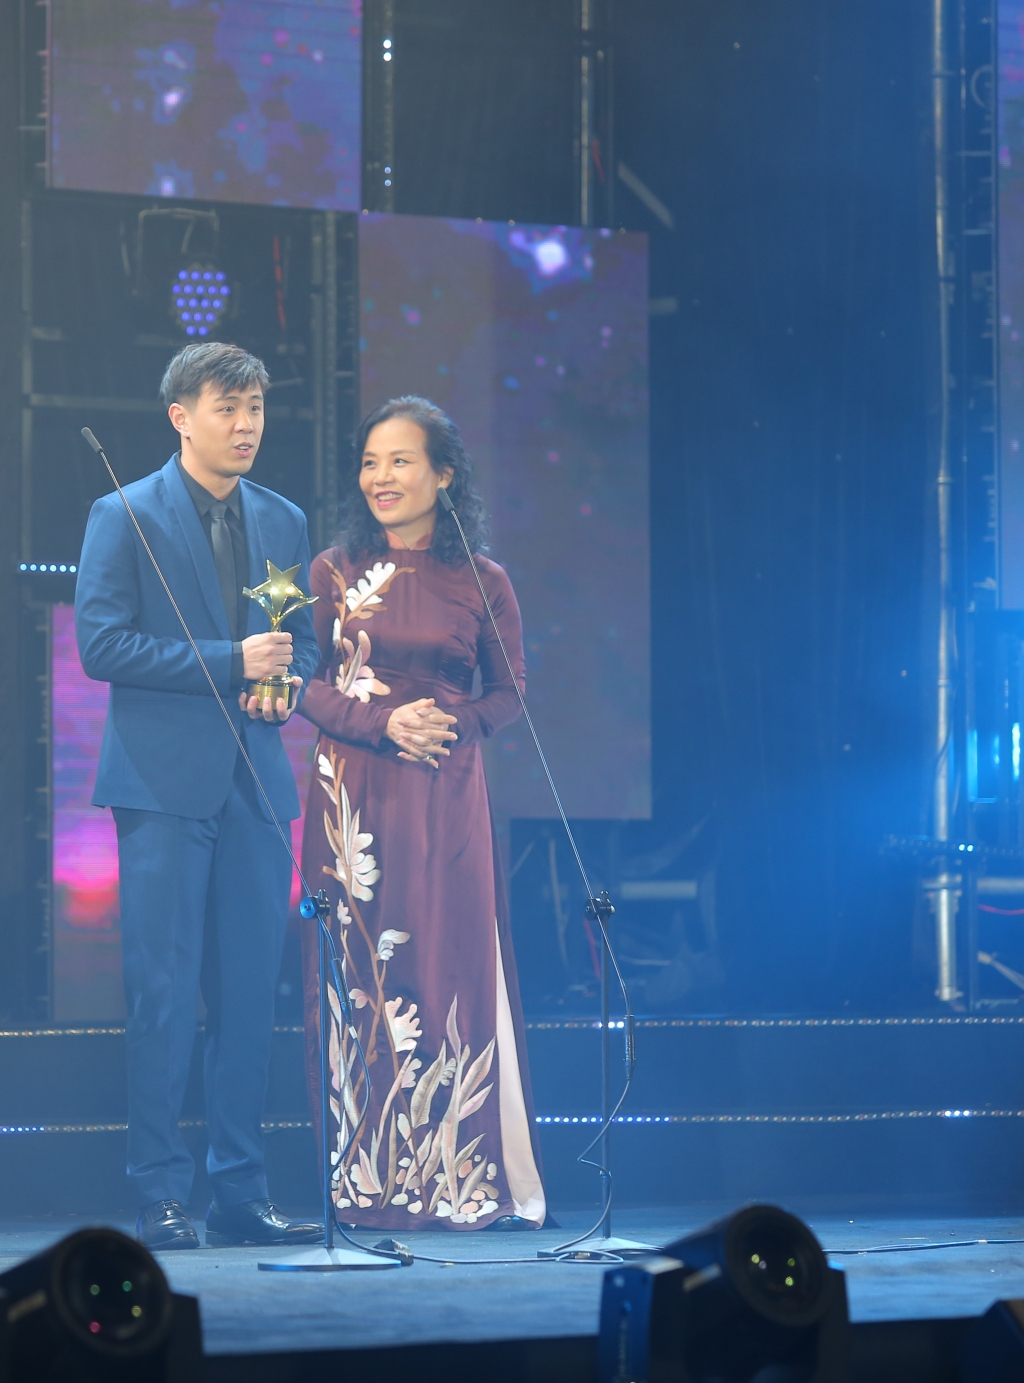 cong bo dan nghe si viet nam tham du giai thuong truyen hinh chau a lan thu 24 asian television awards